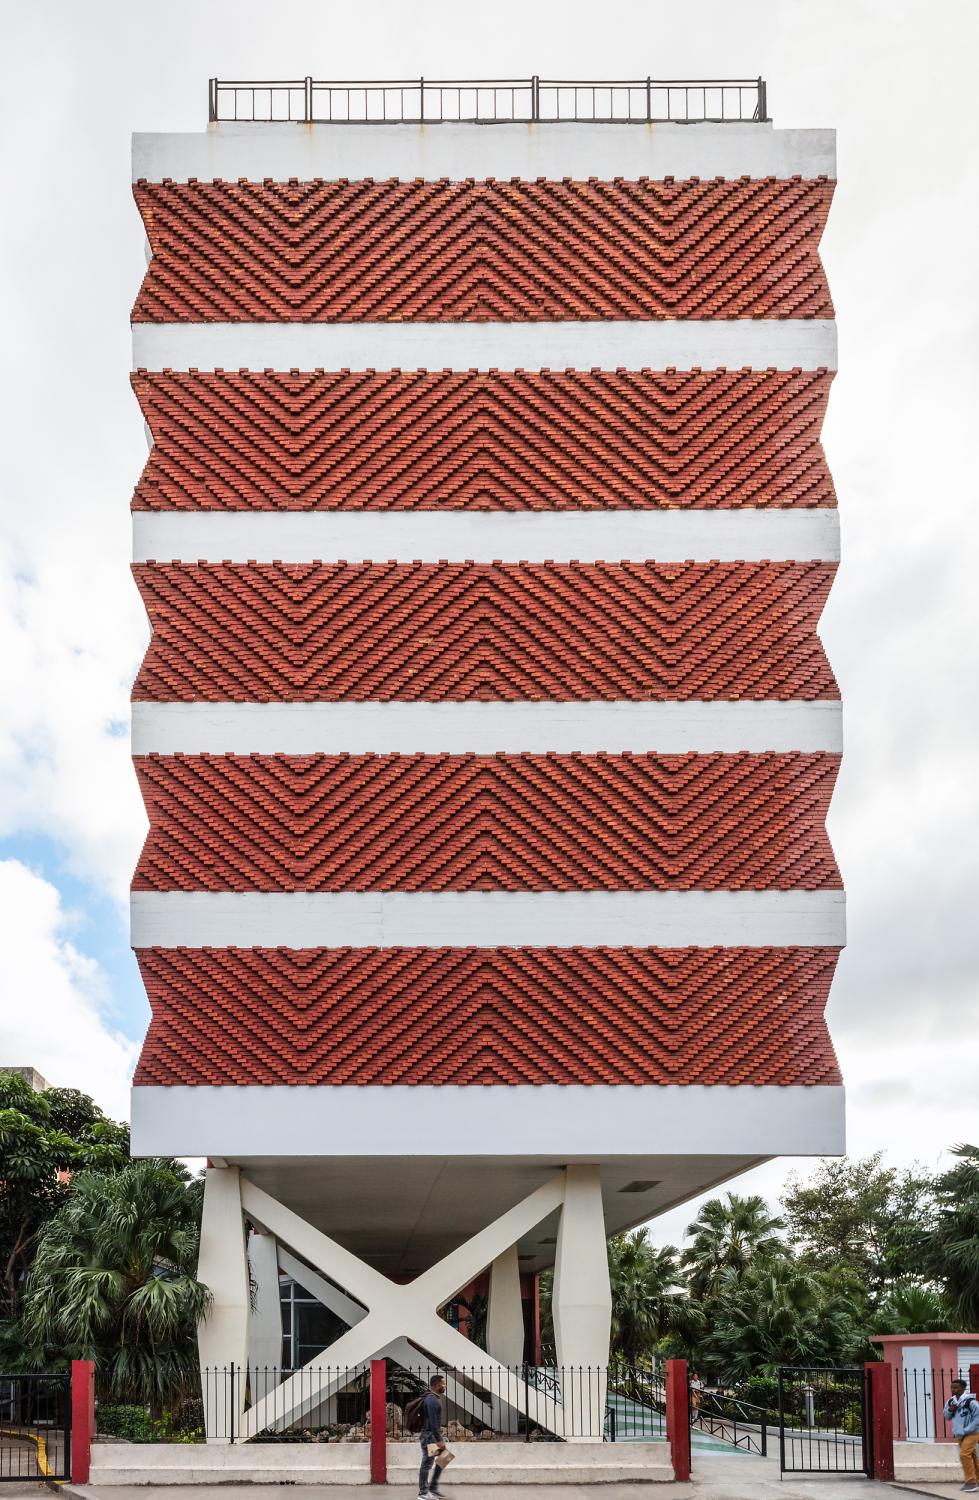 Cuban Modernist Architecture in Havana - Liga Contra la Ceguera / Anti Blindness League